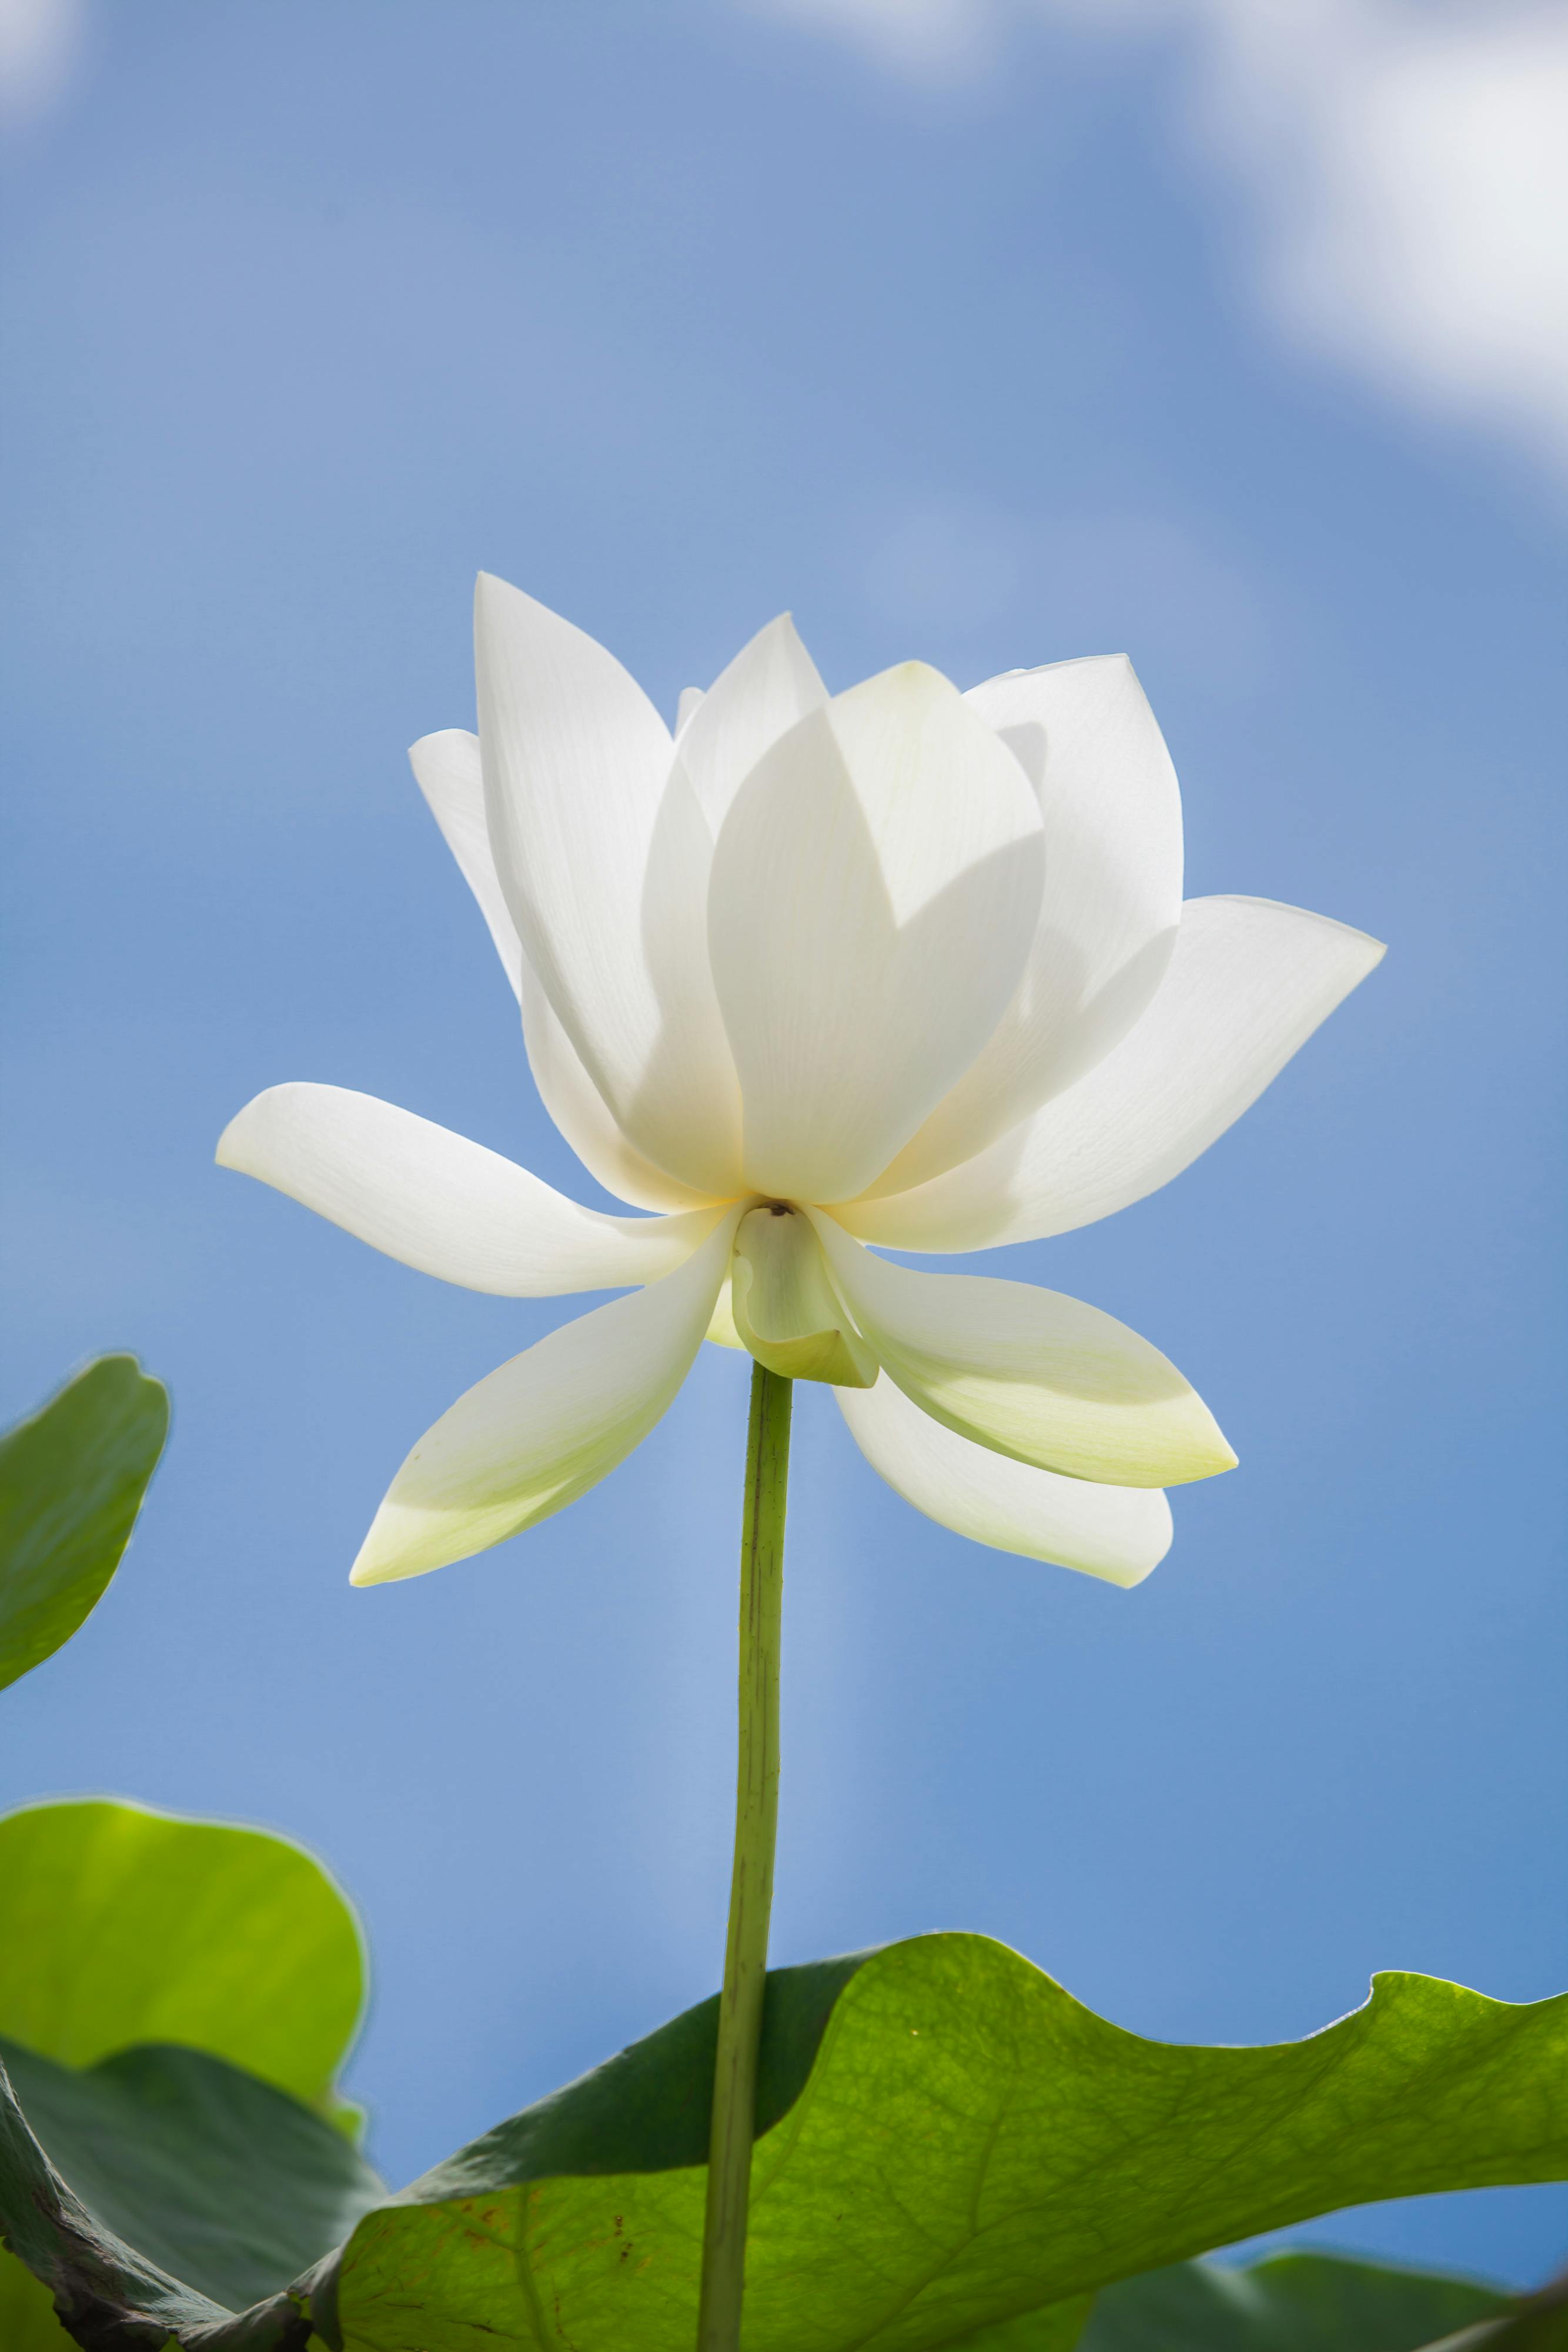 200 Free Blue Lotus  Lotus Images  Pixabay